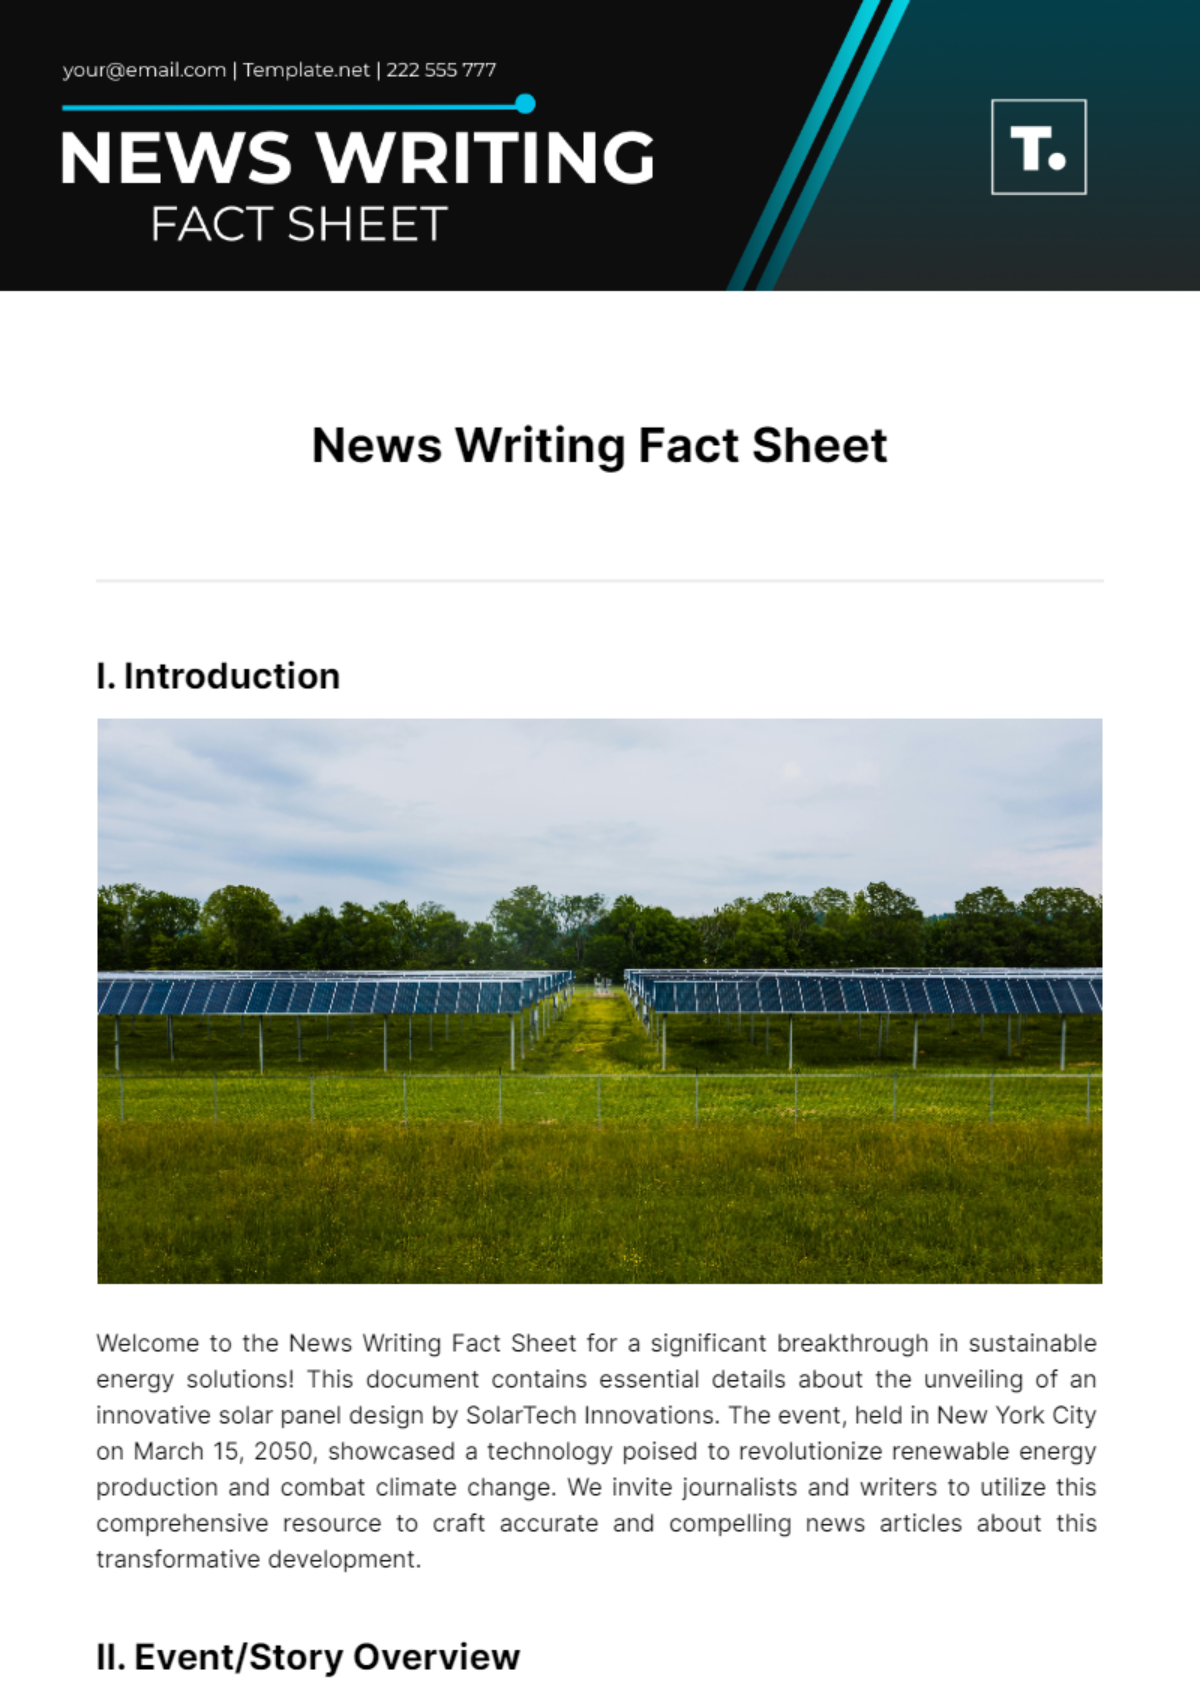 News Writing Fact Sheet Template